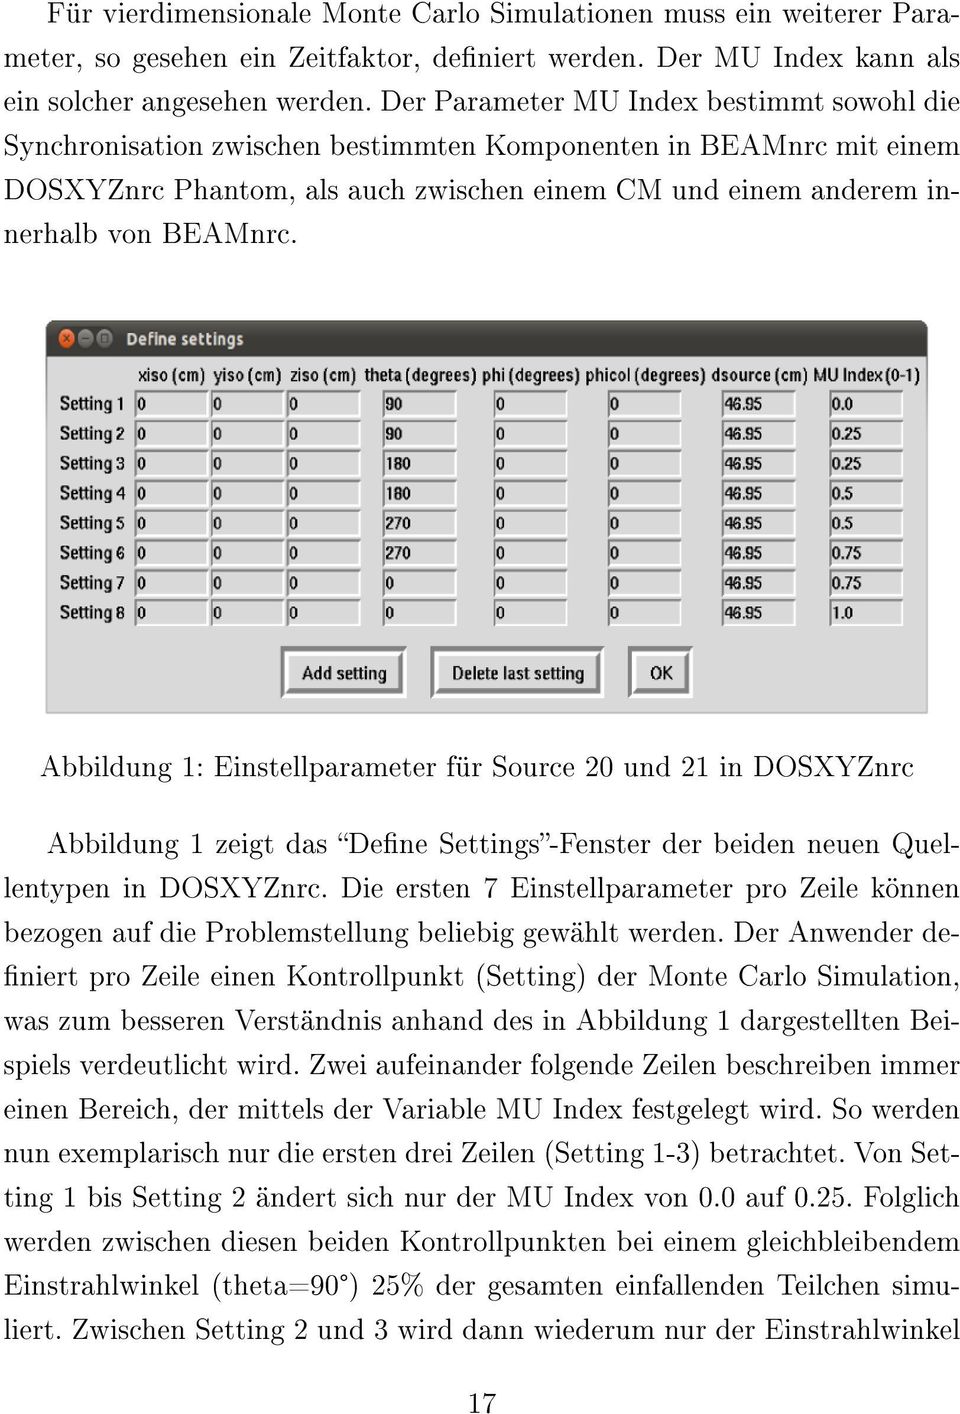 Abbildung 1: Einstellparameter für Source 20 und 21 in DOSXYZnrc Abbildung 1 zeigt das Dene Settings-Fenster der beiden neuen Quellentypen in DOSXYZnrc.